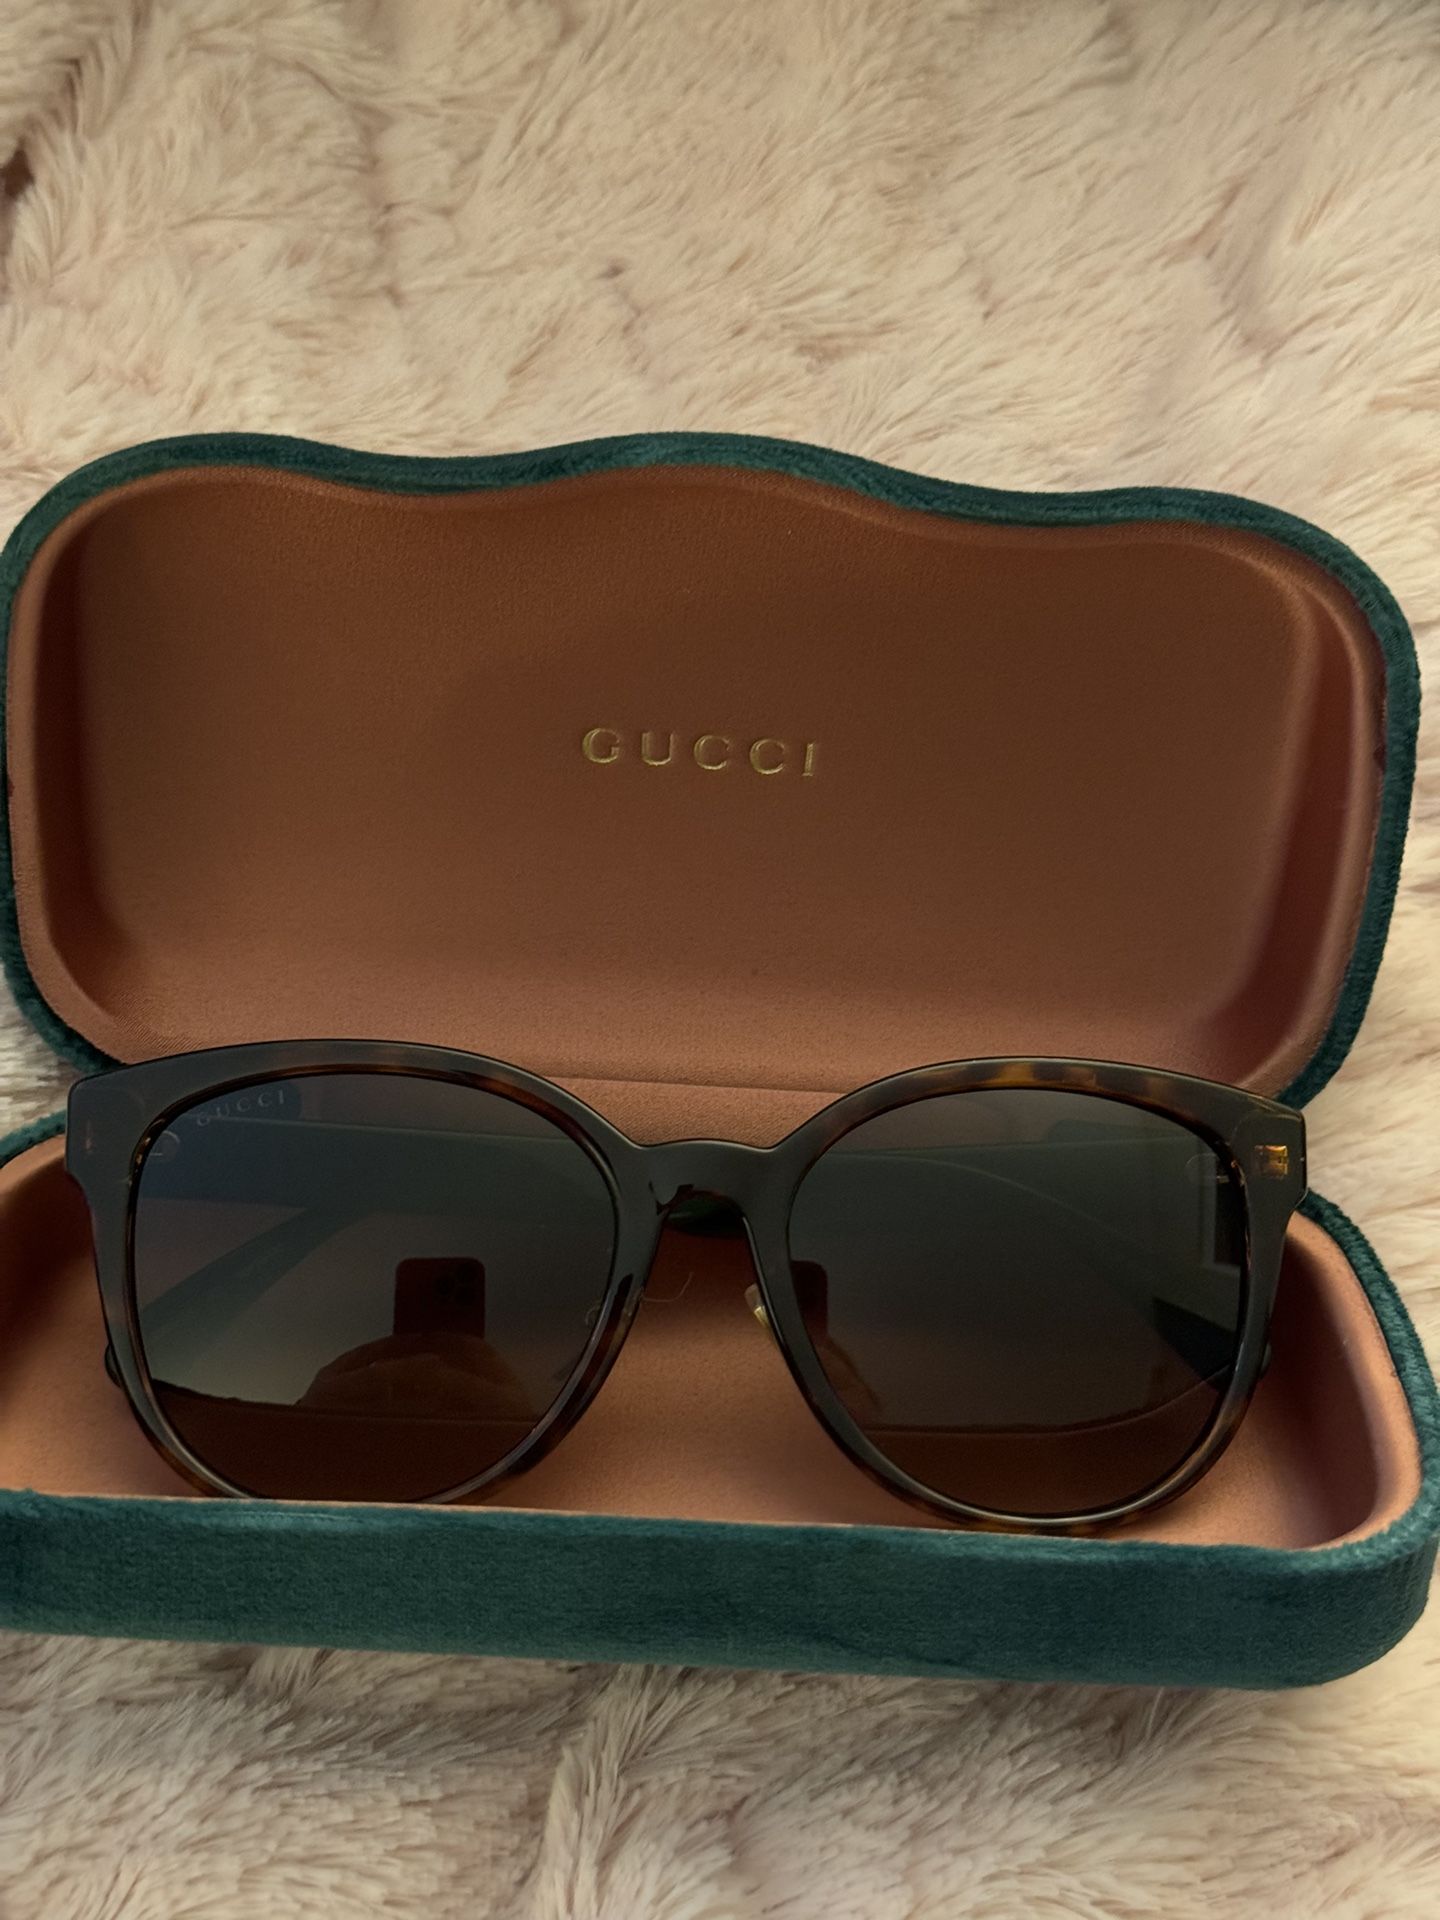 New Women’s Gucci Sunglasses